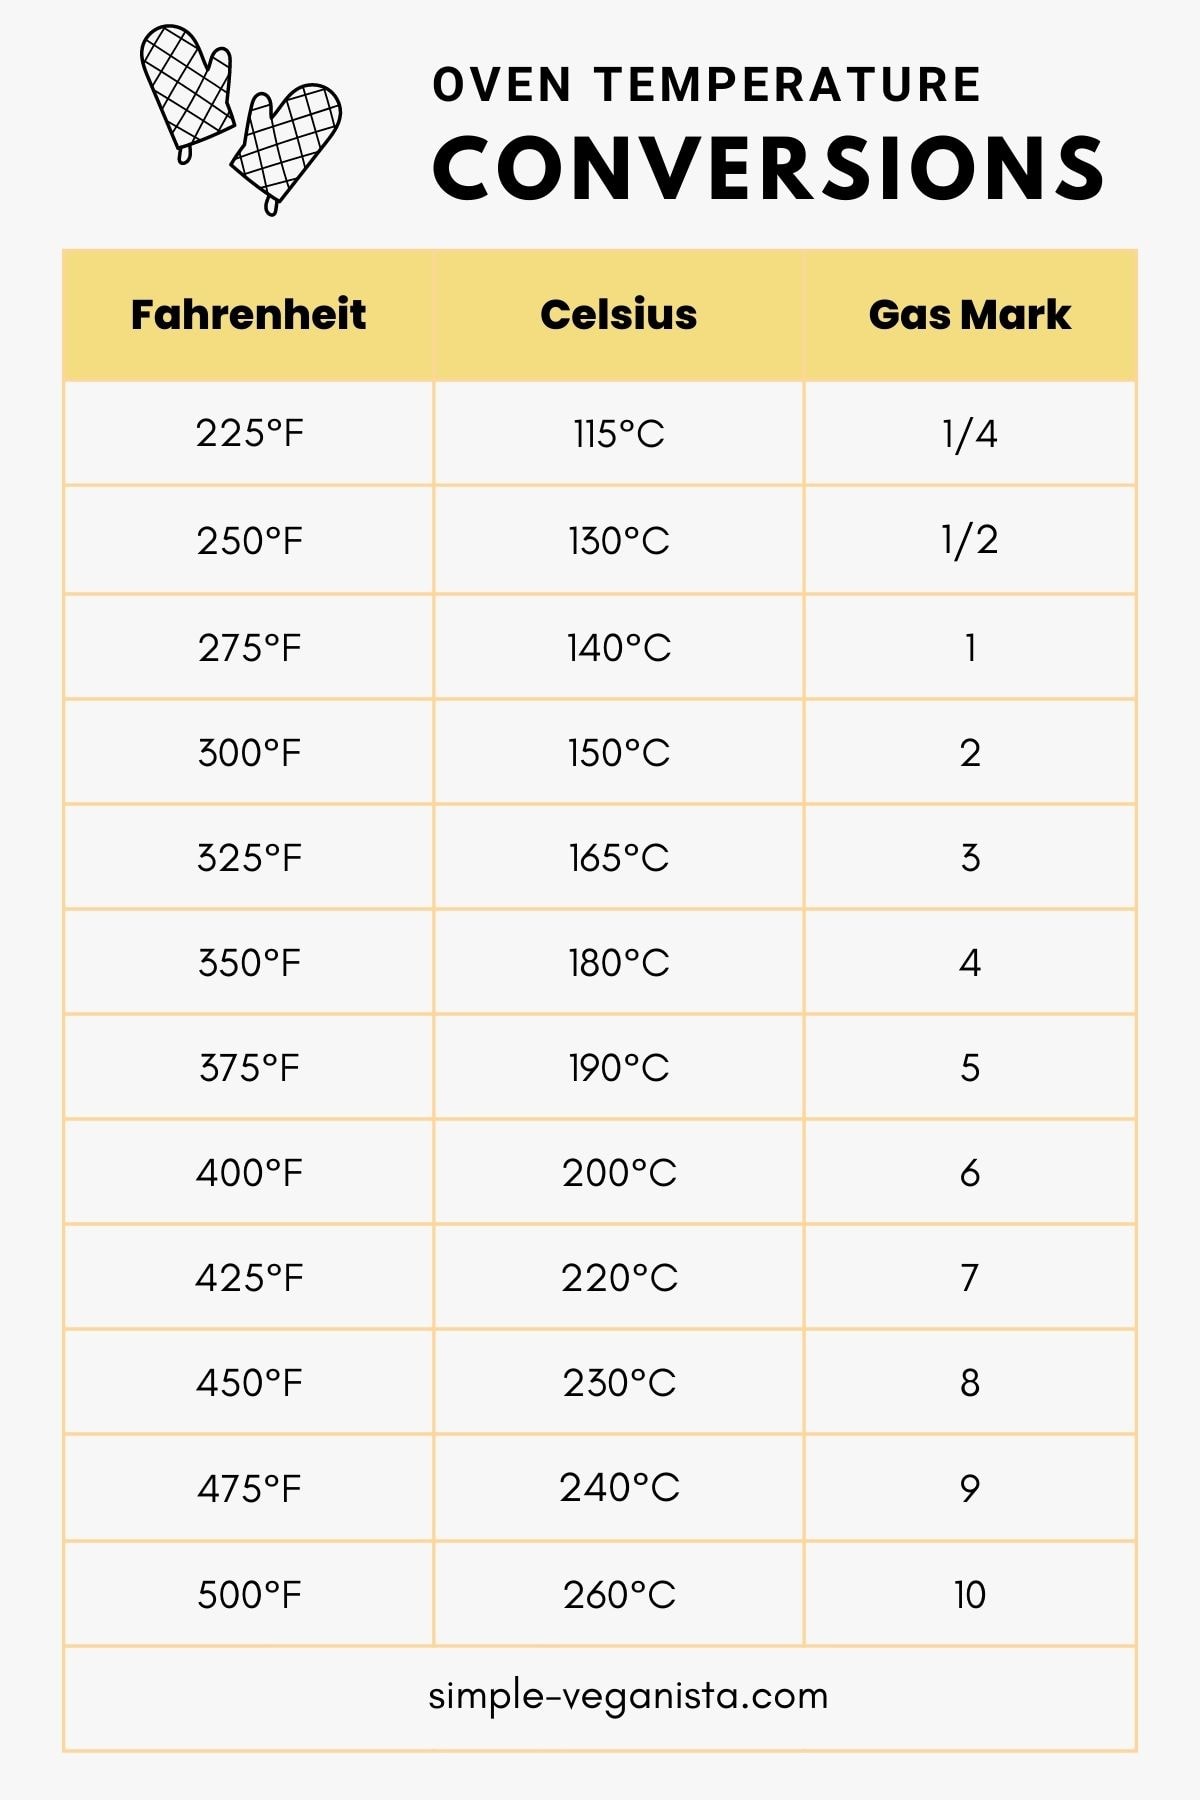 oven temperature conversion chart graphic.